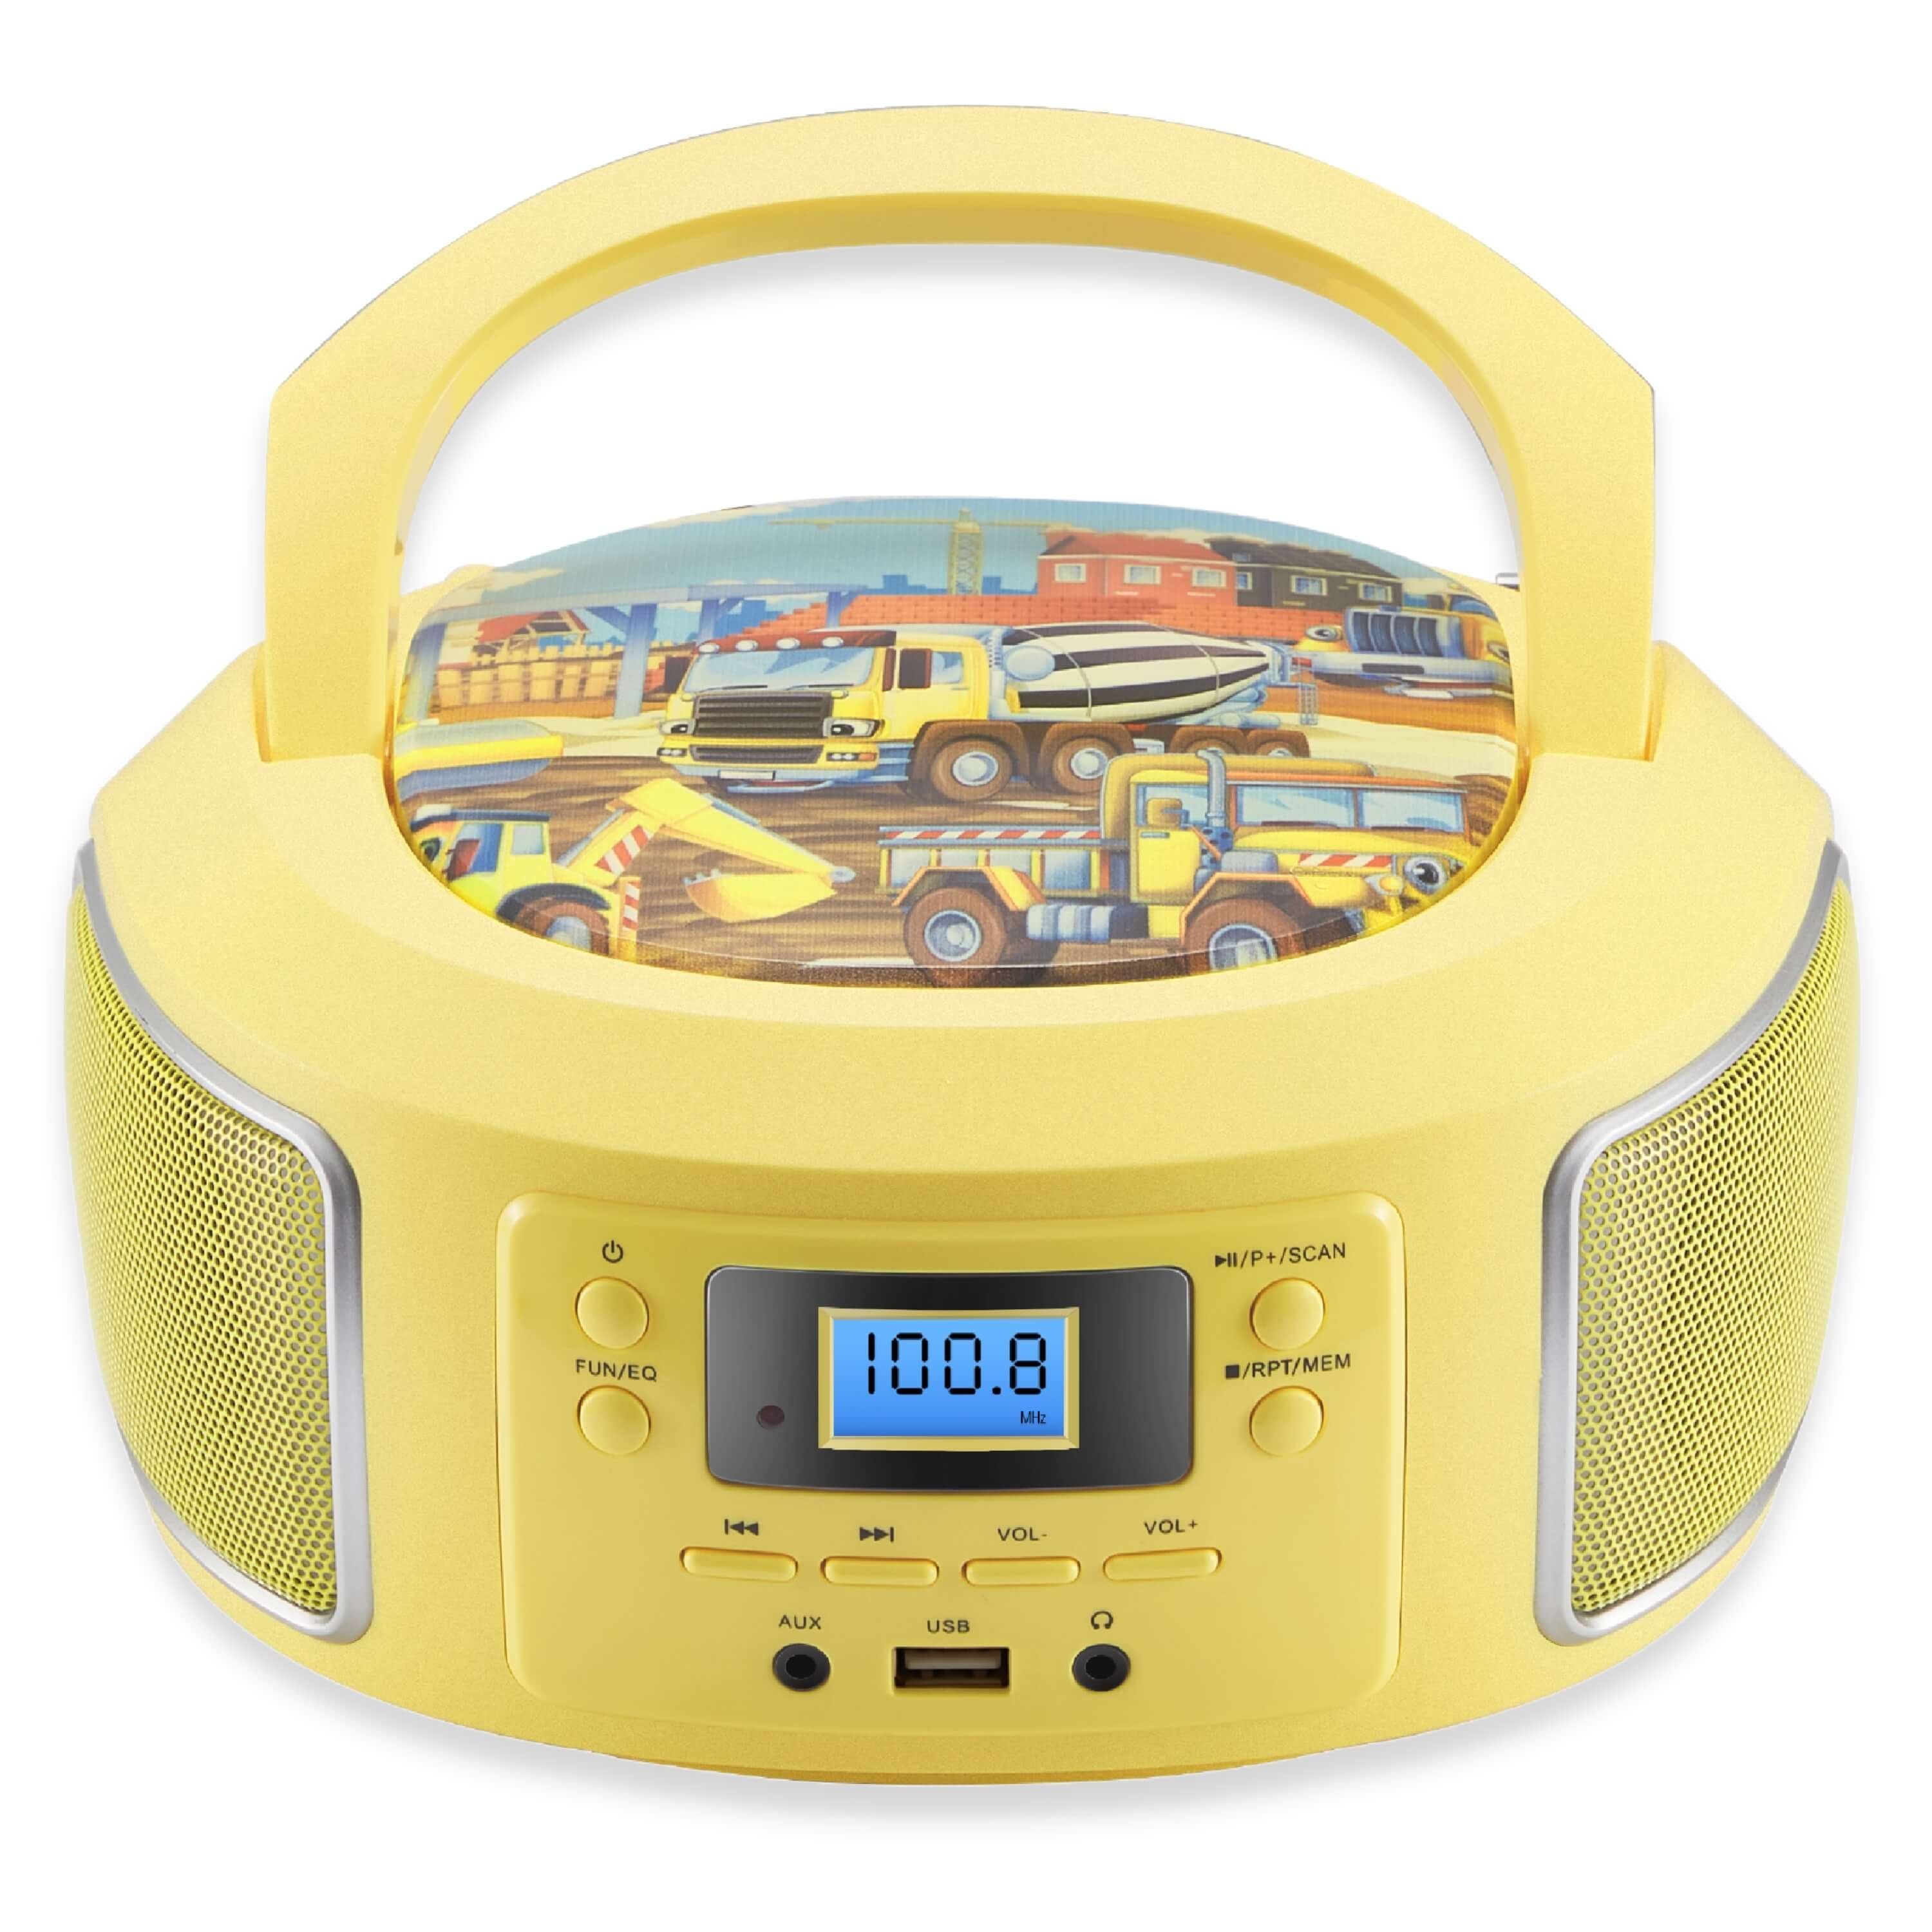 (CD, CD-Player Musikbox, mit MP3 Cyberlux FM CD Player USB) tragbarer Boombox, Kinder CL-950 tragbar, Radio